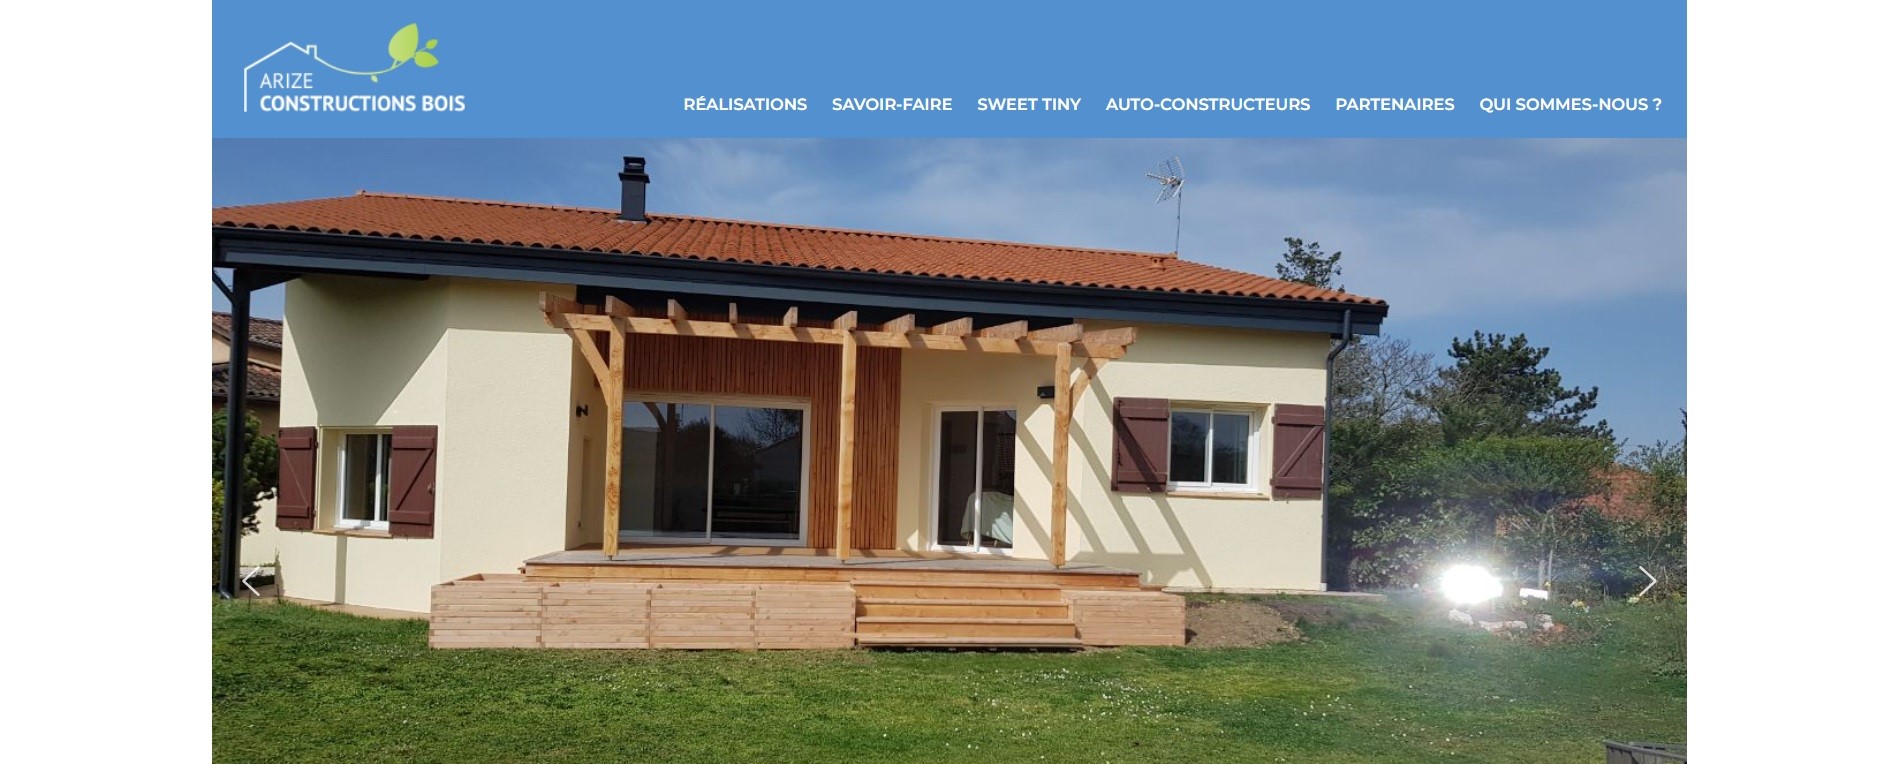  Arize Construction Bois - Constructeur Maisons à Foix